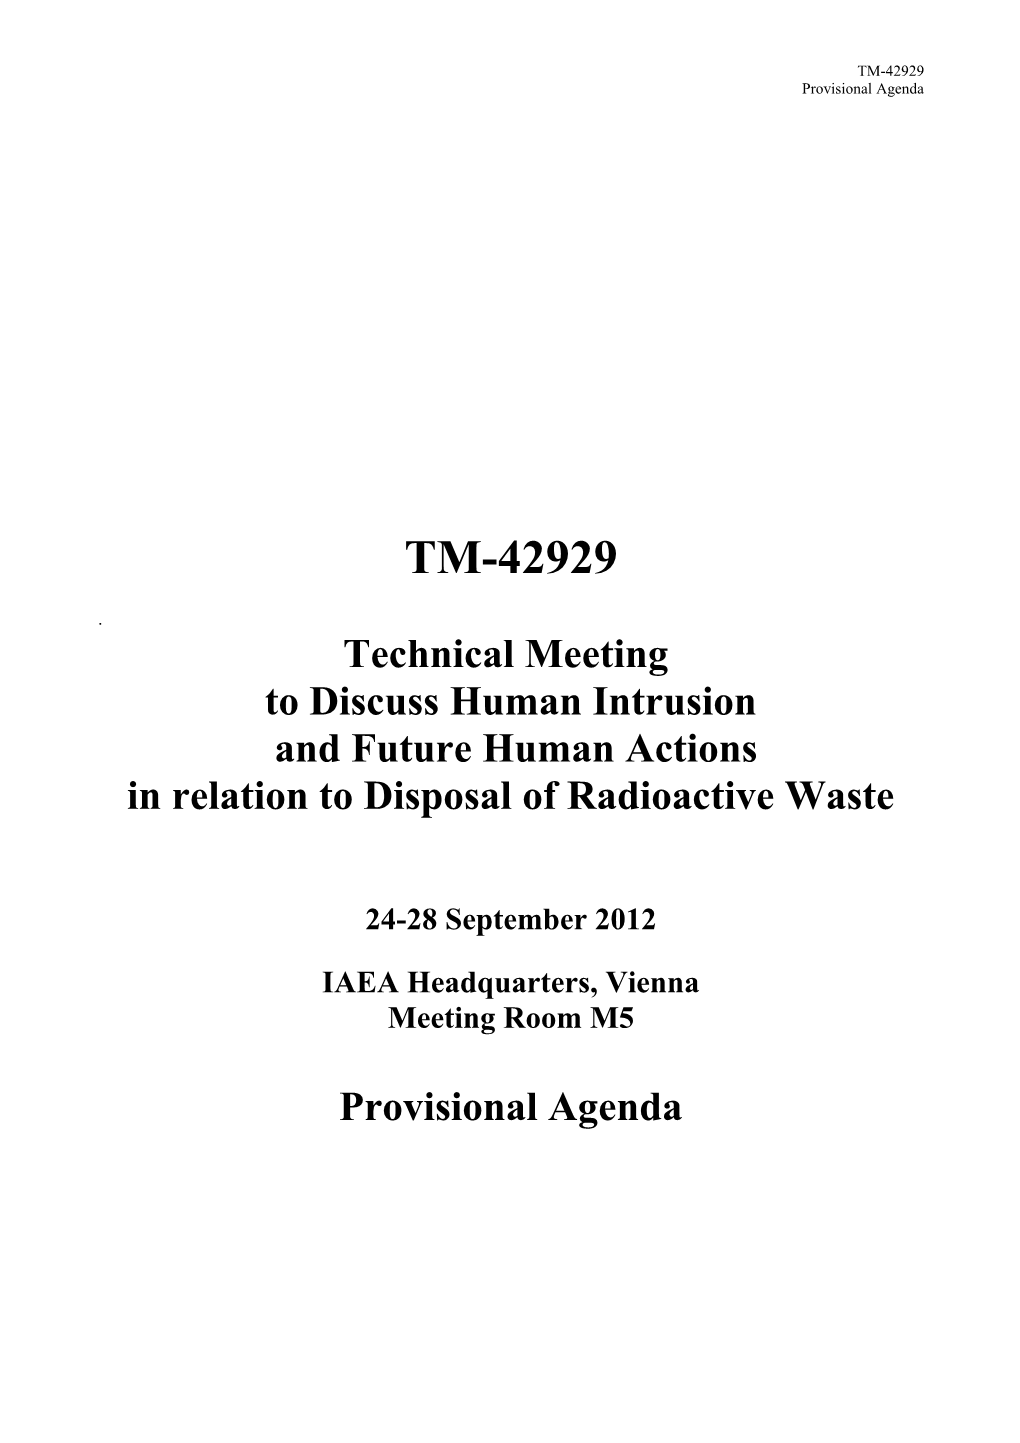 TM-42929 Provisional Agenda